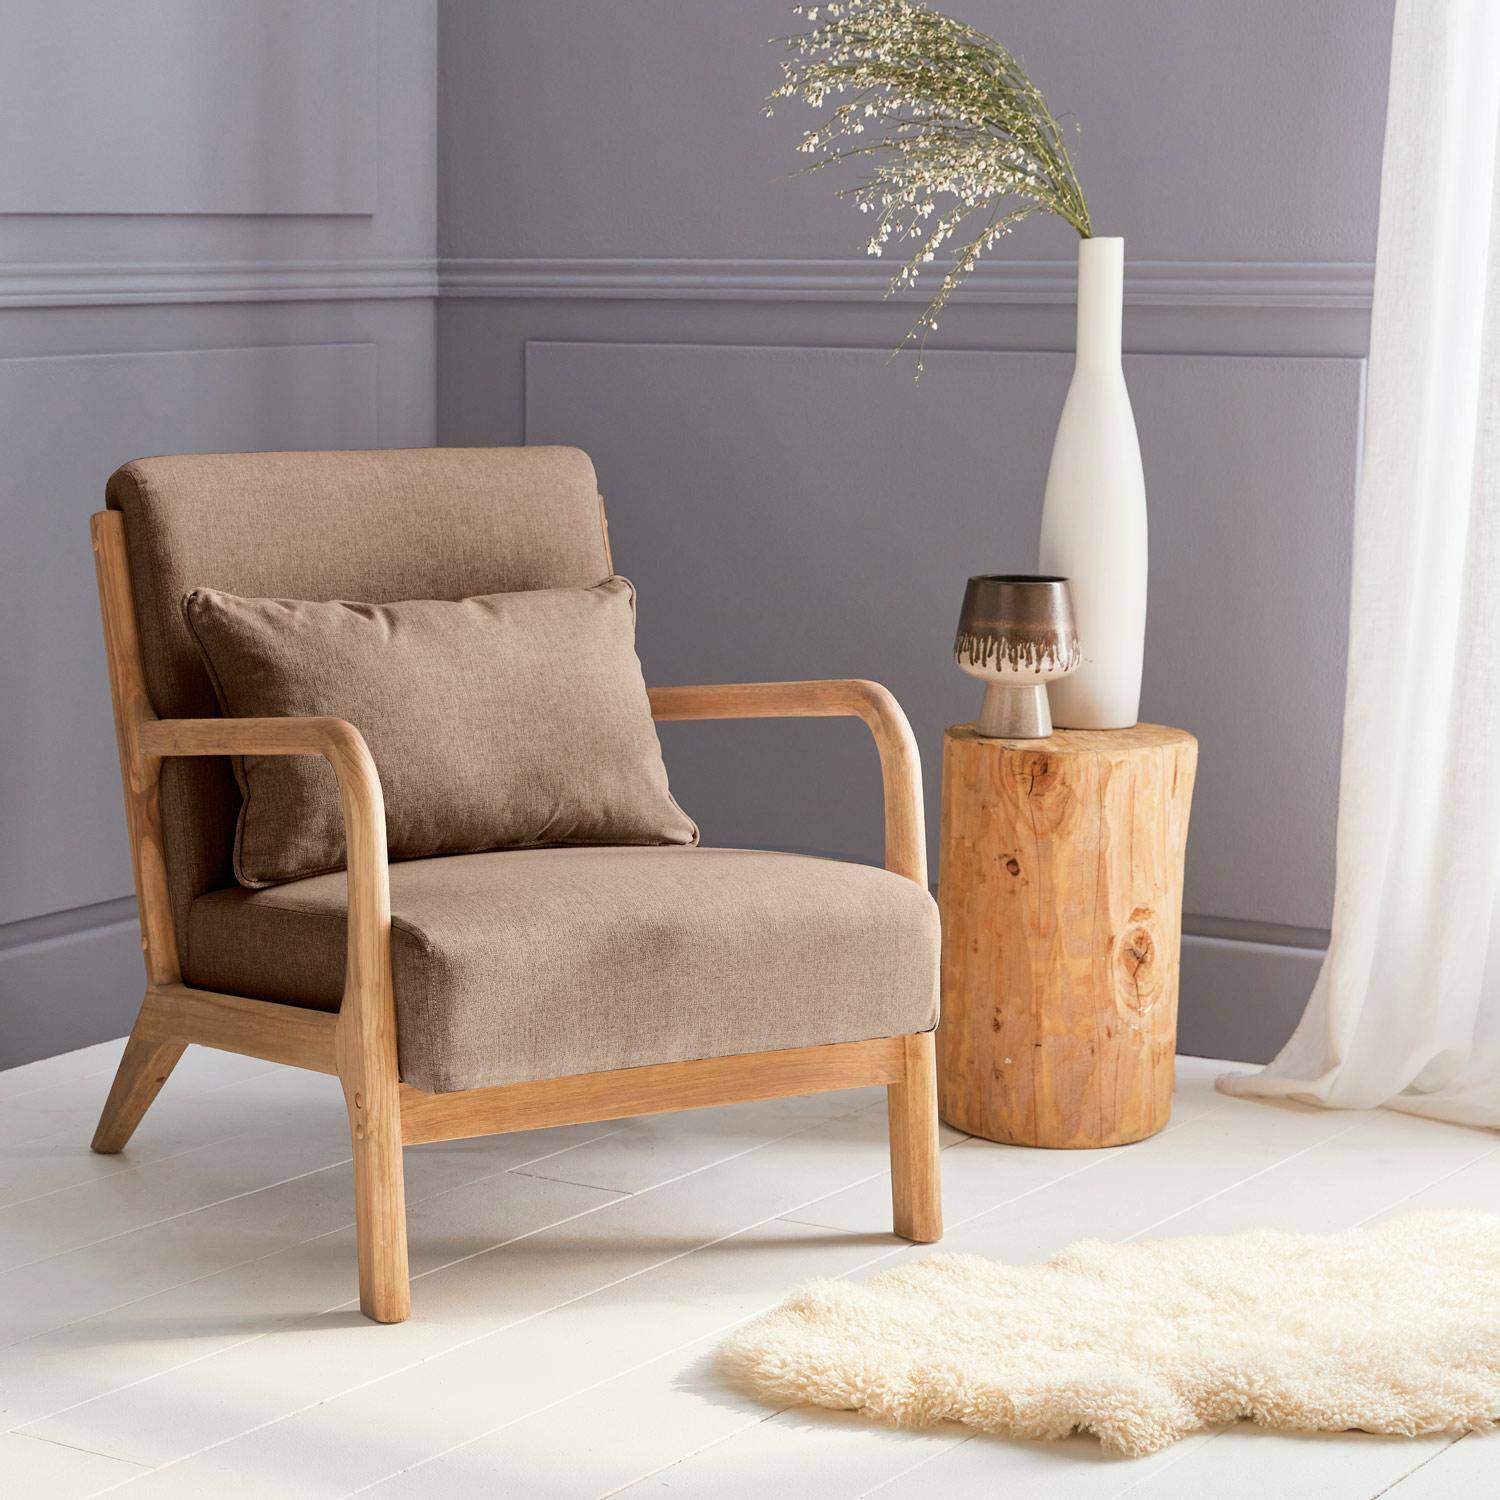 Sillón de diseño marrón en madera y tela, 1 asiento recto fijo, patas de compás escandinavas, armazón de madera maciza, asiento cómodo Photo1